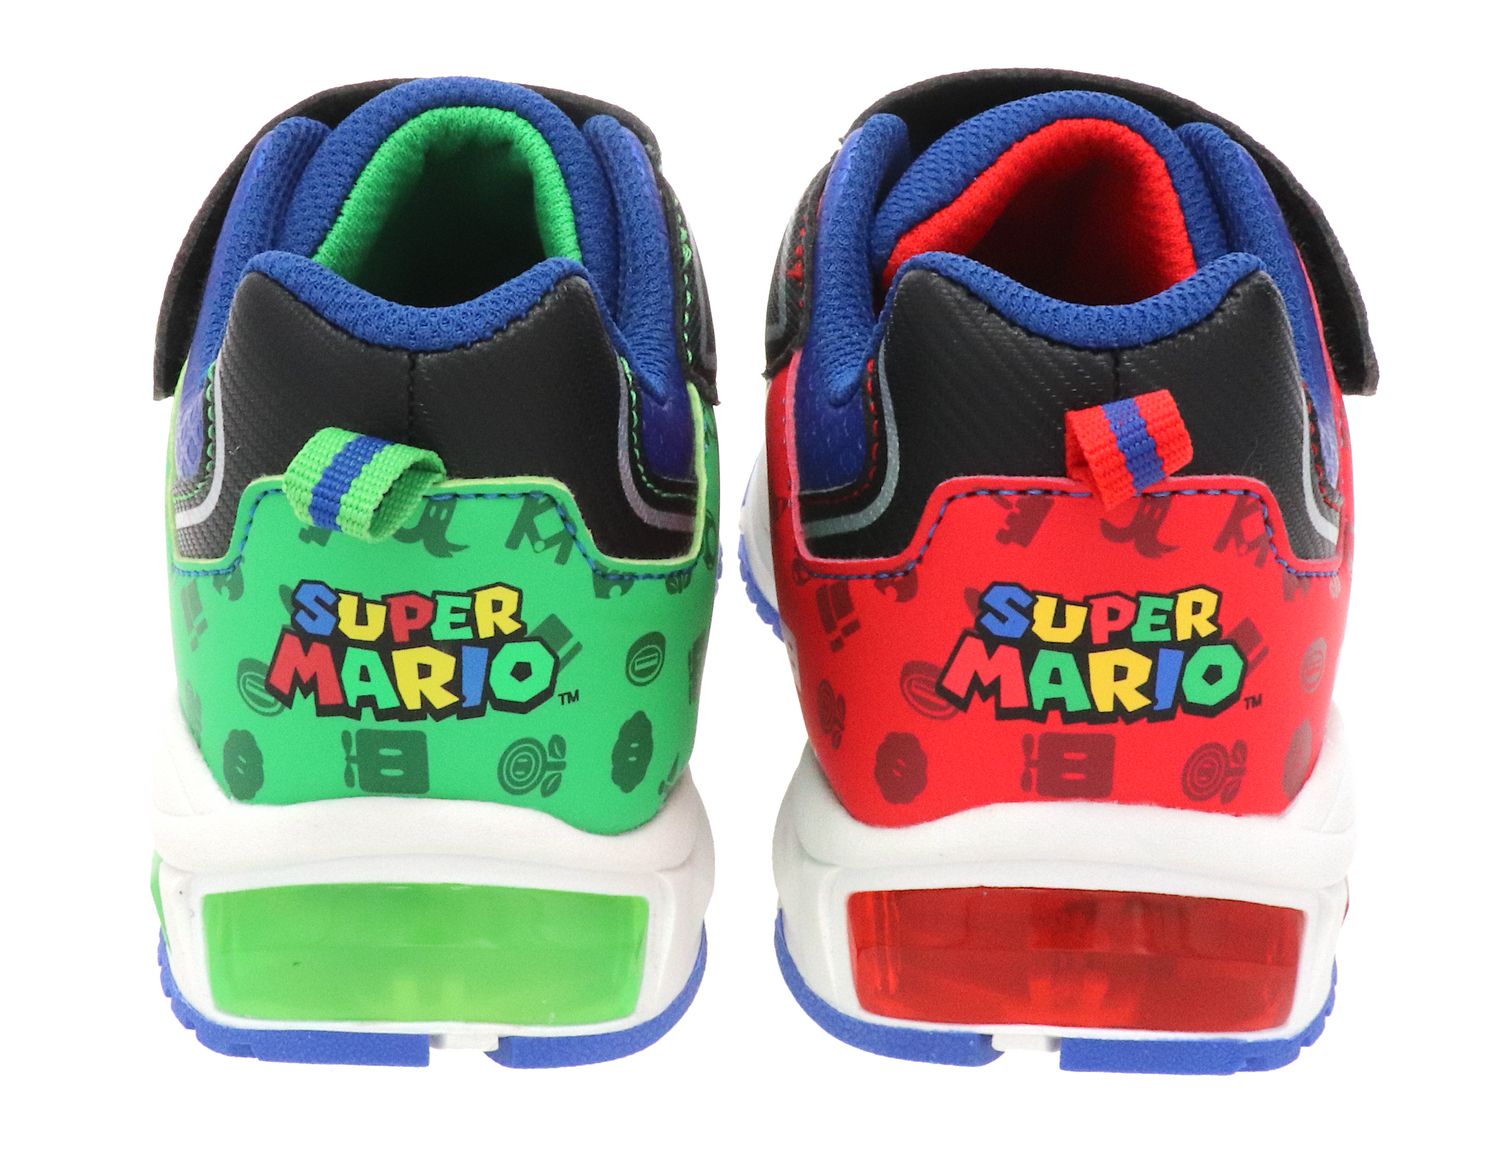 Super Mario Shoes, Super Mario Sneakers, Tennis Shoes, Printed Shoes, Mario,  Sneakers, Gift, Gumshoes, Black, Super Mario Game, Cartoon - Etsy